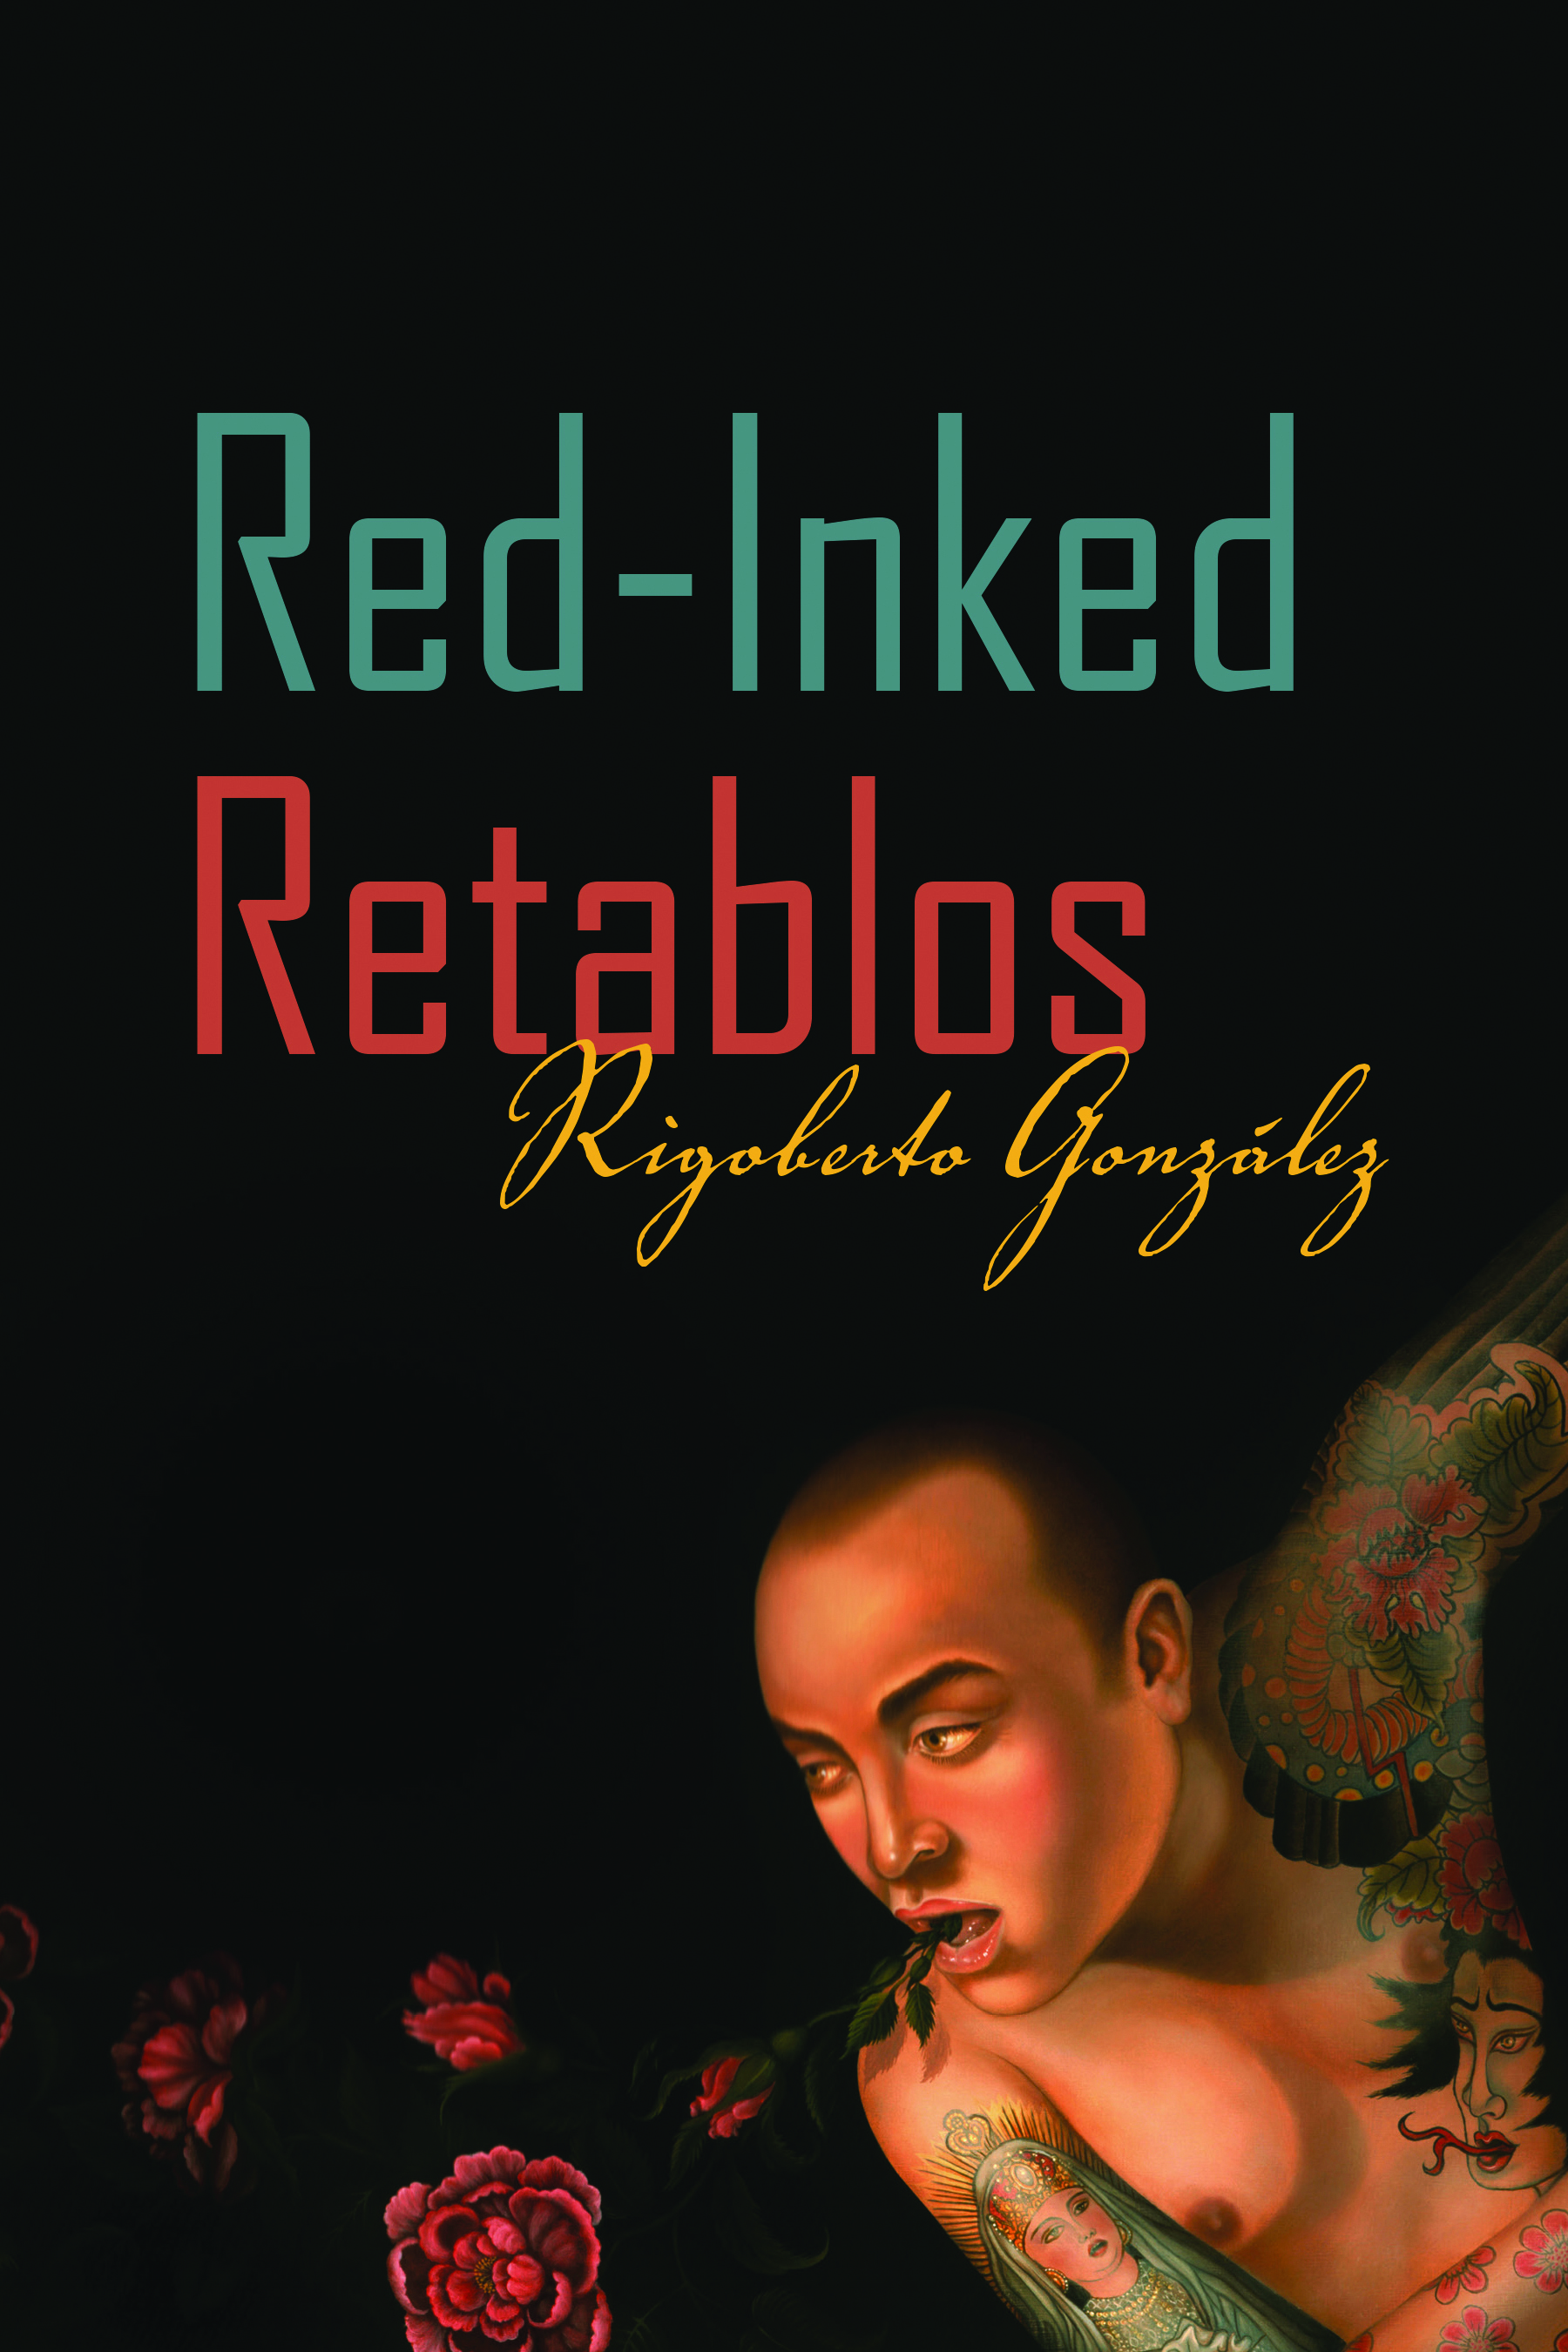 Red-Inked Retablos